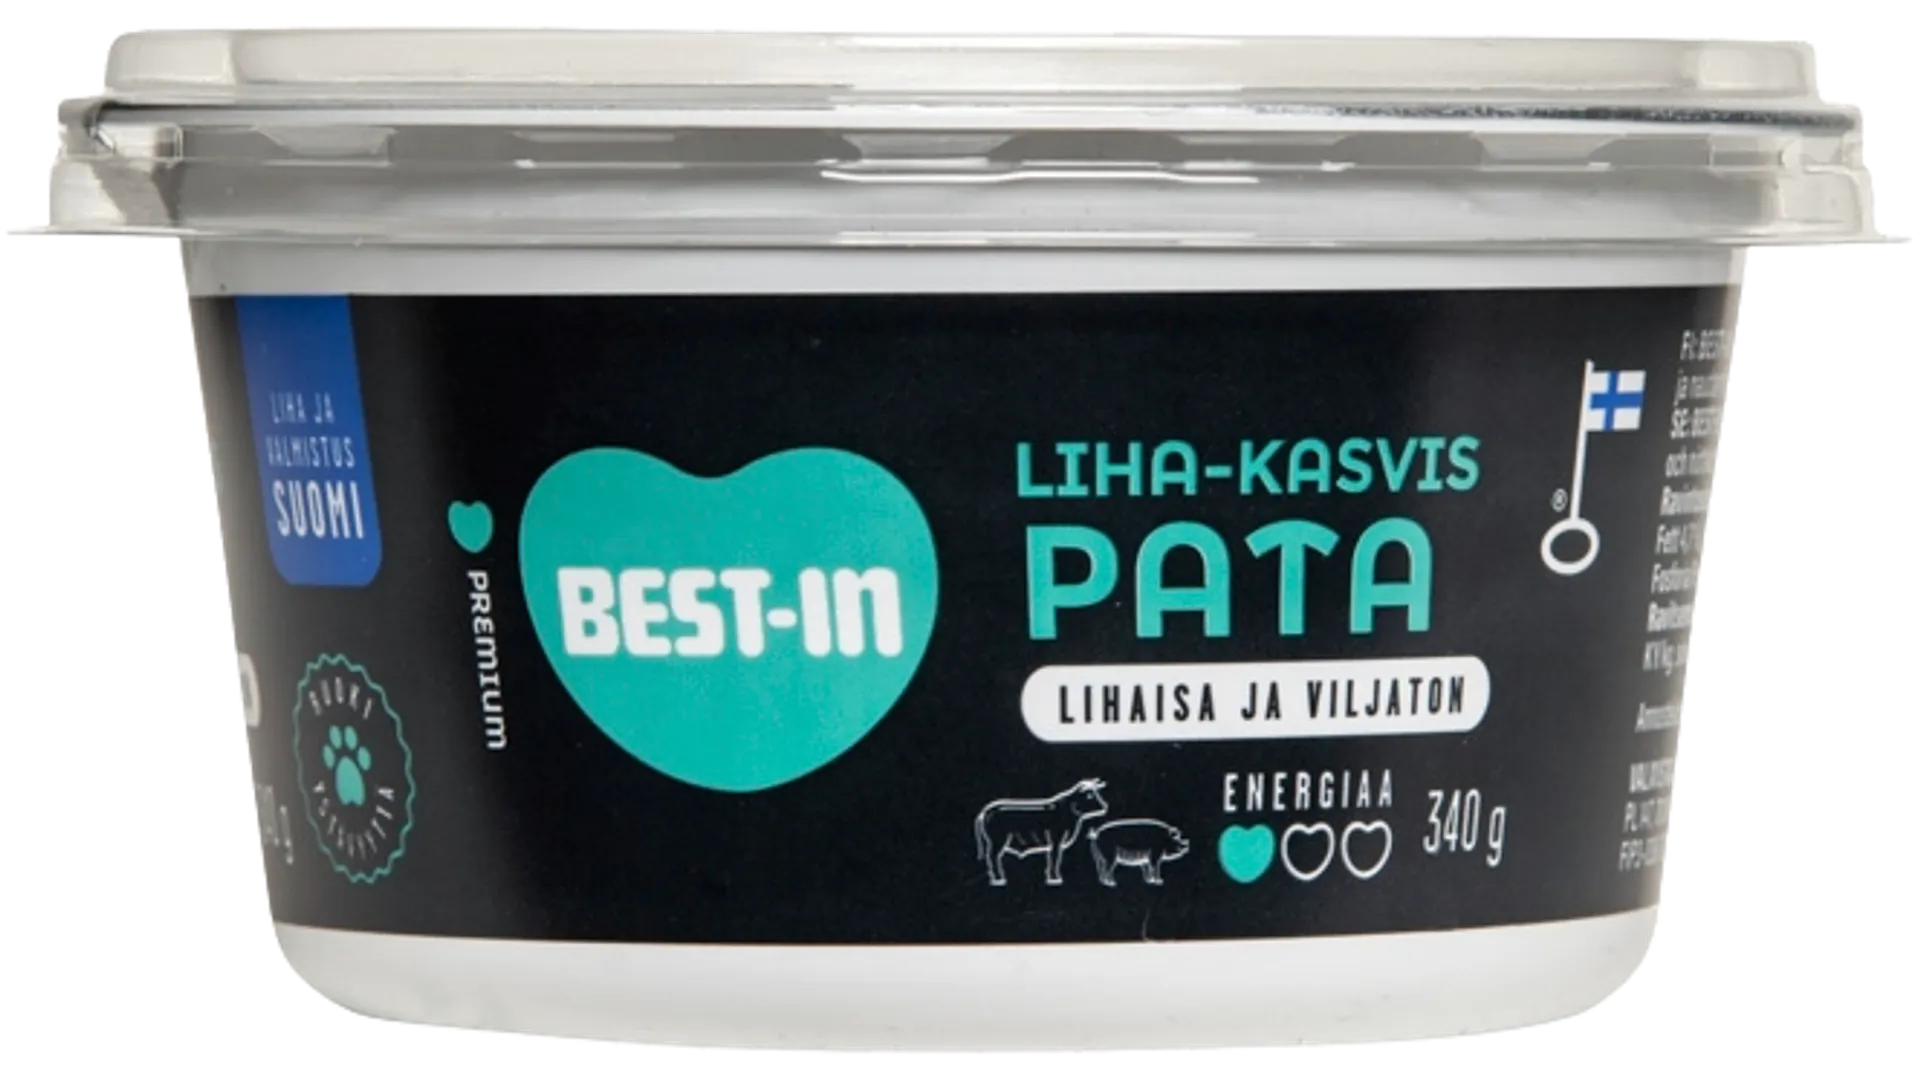 Best-In Liha-kasvispata Koiran Tuoreruoka 340g